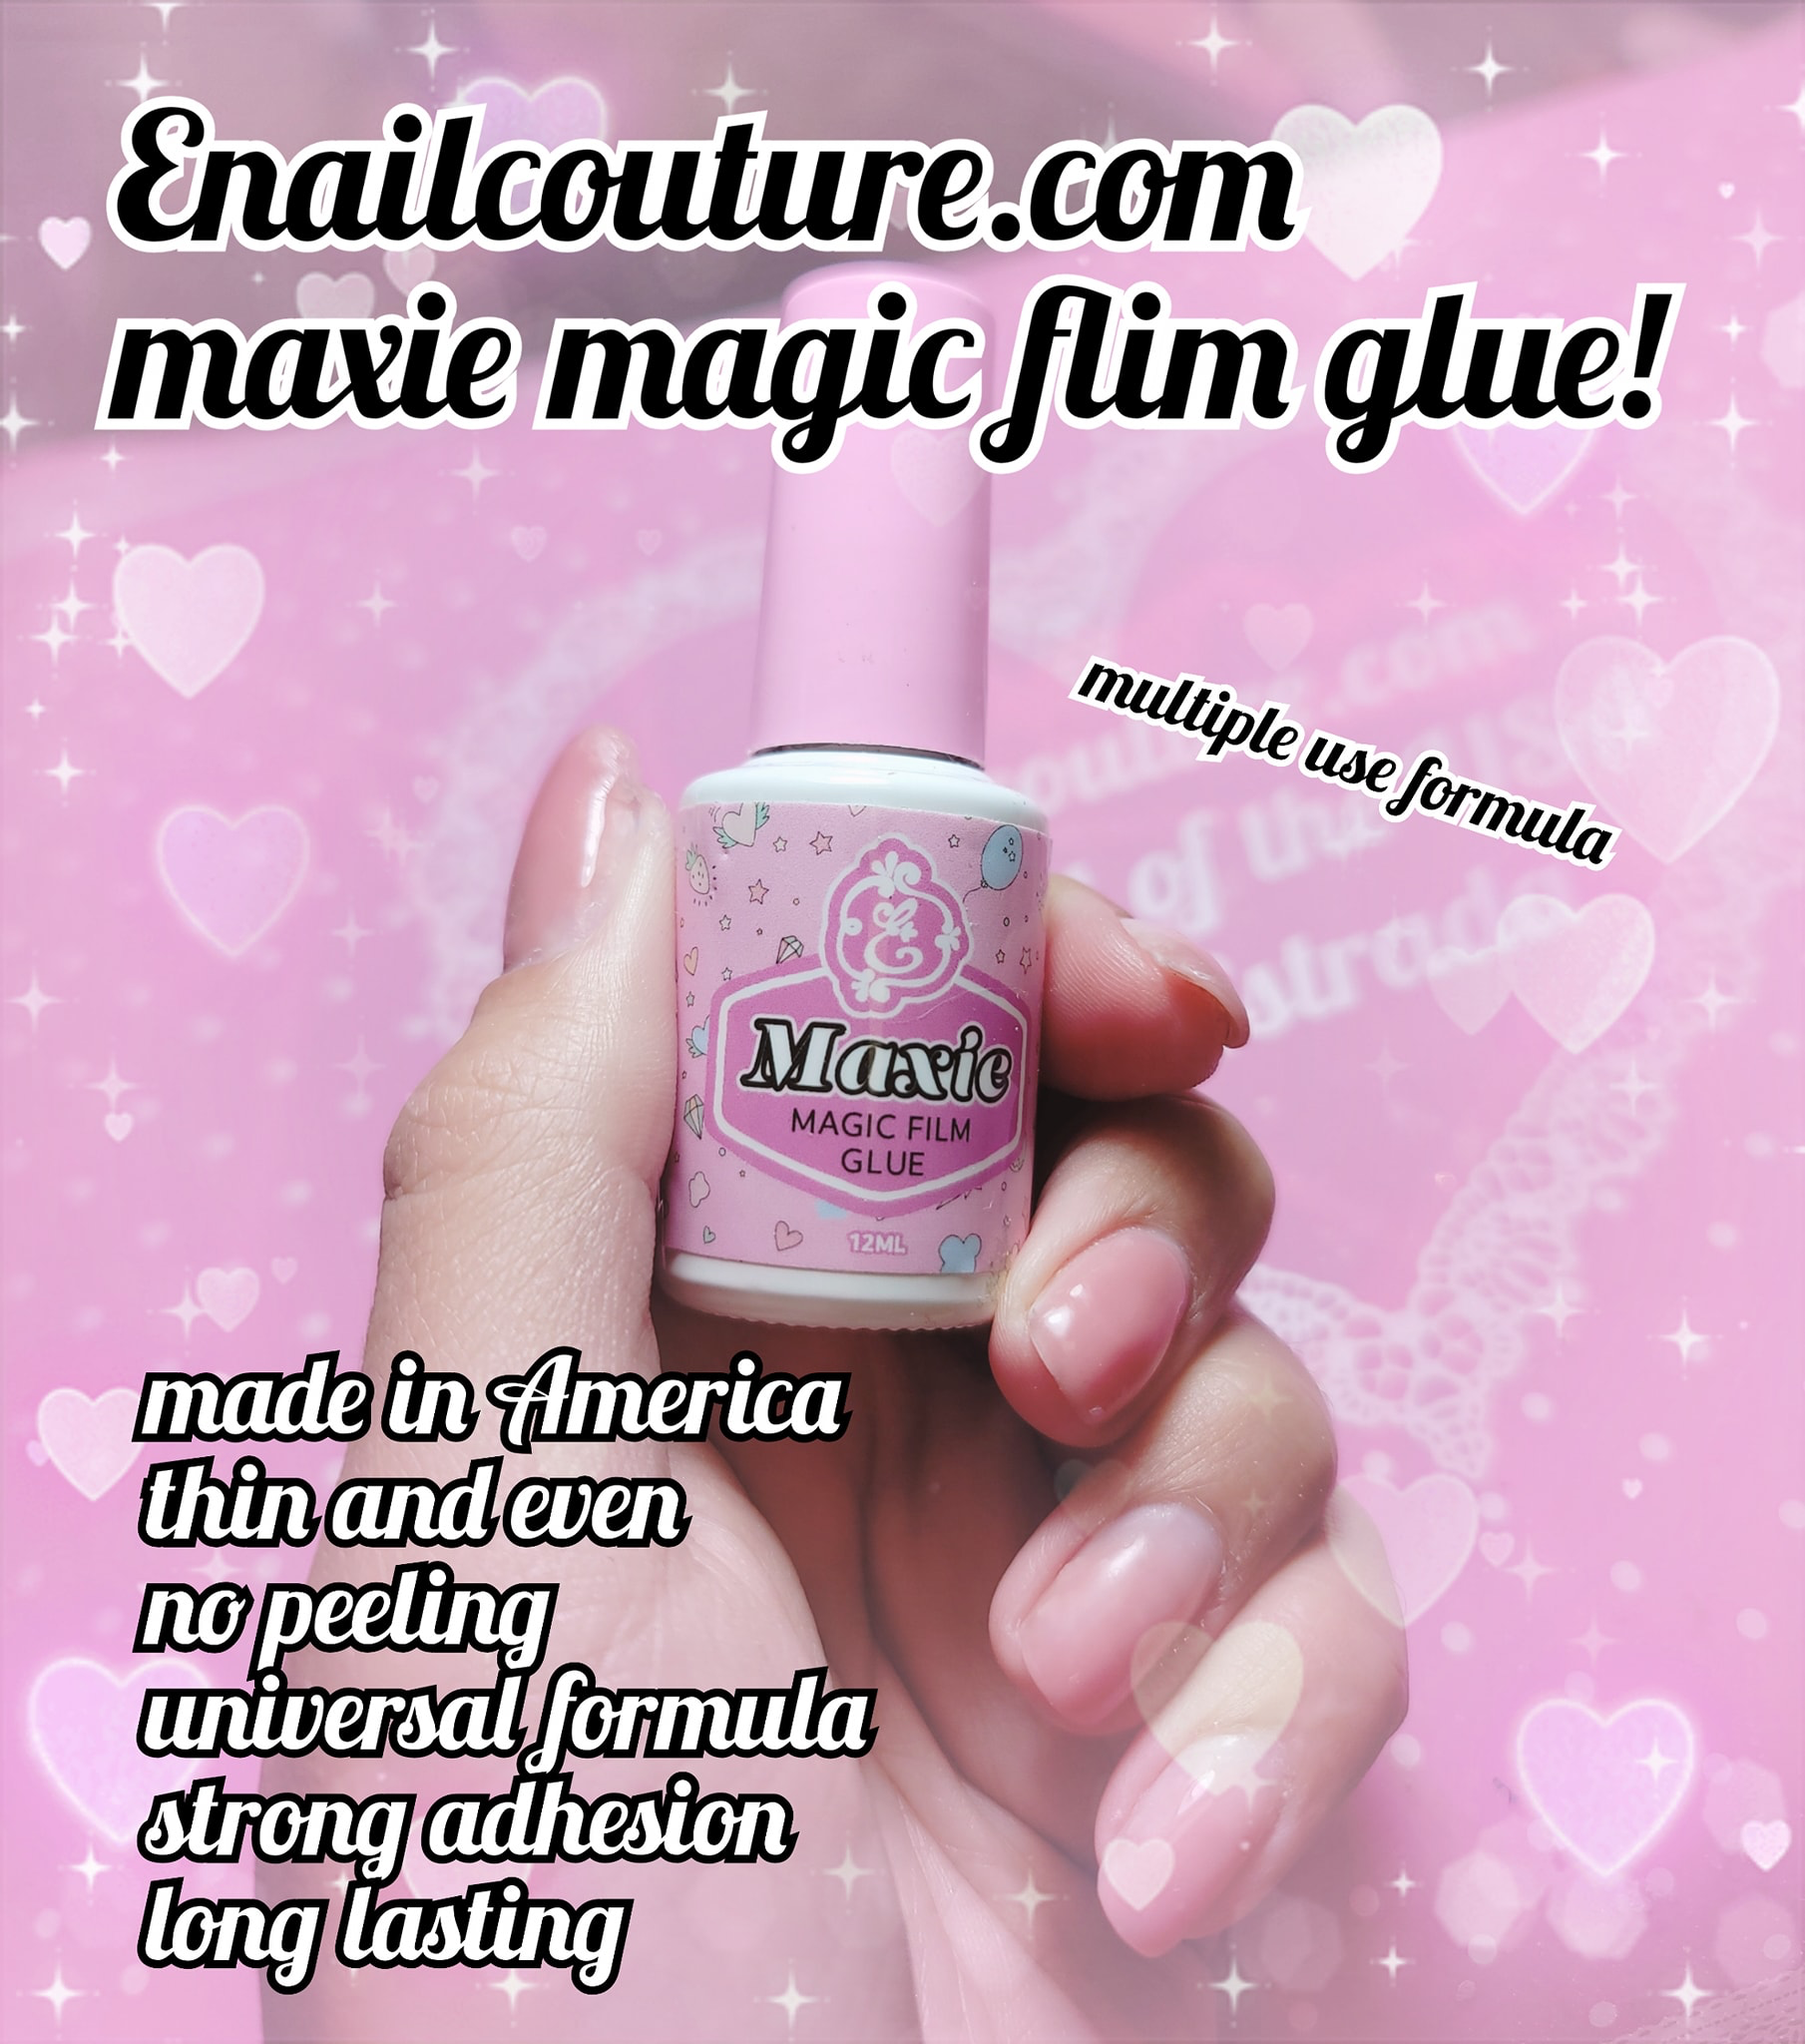 Maxie magic film glue (nail art foil gel)